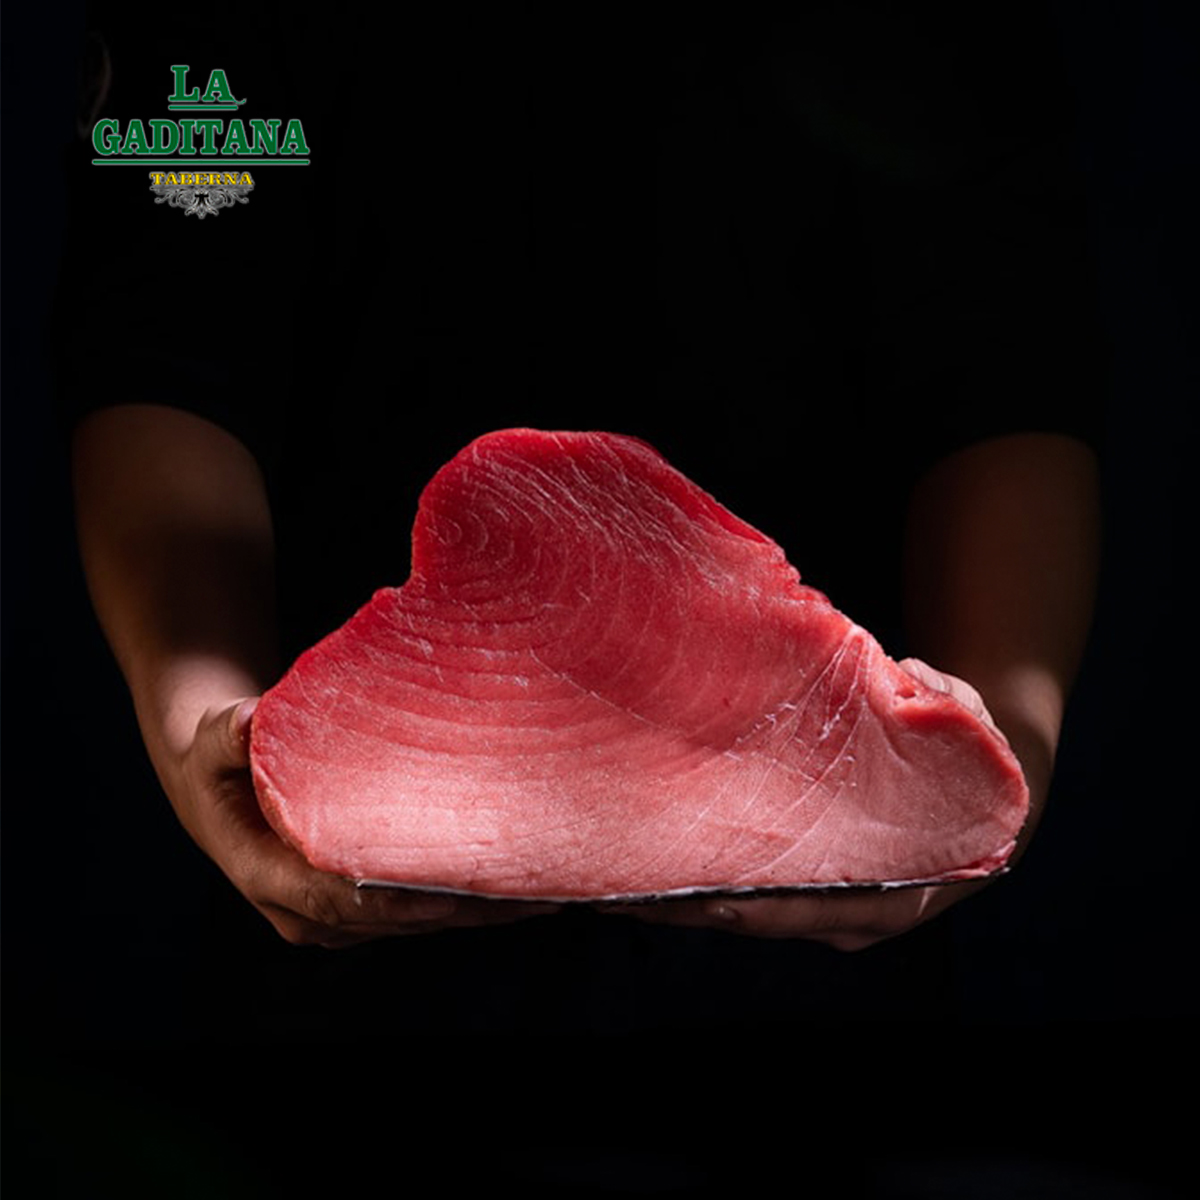 💙🐟 En La Gaditana Taberna - Restaurante sabemos que el verdadero sabor del atún se encuentra en cada detalle de nuestra cocina. ¡Ven a disfrutar y déjate conquistar por nuestros platos llenos de frescura y autenticidad! 🍽️✨ #SaborGaditano #ExperienciaCulinary #LaGaditana